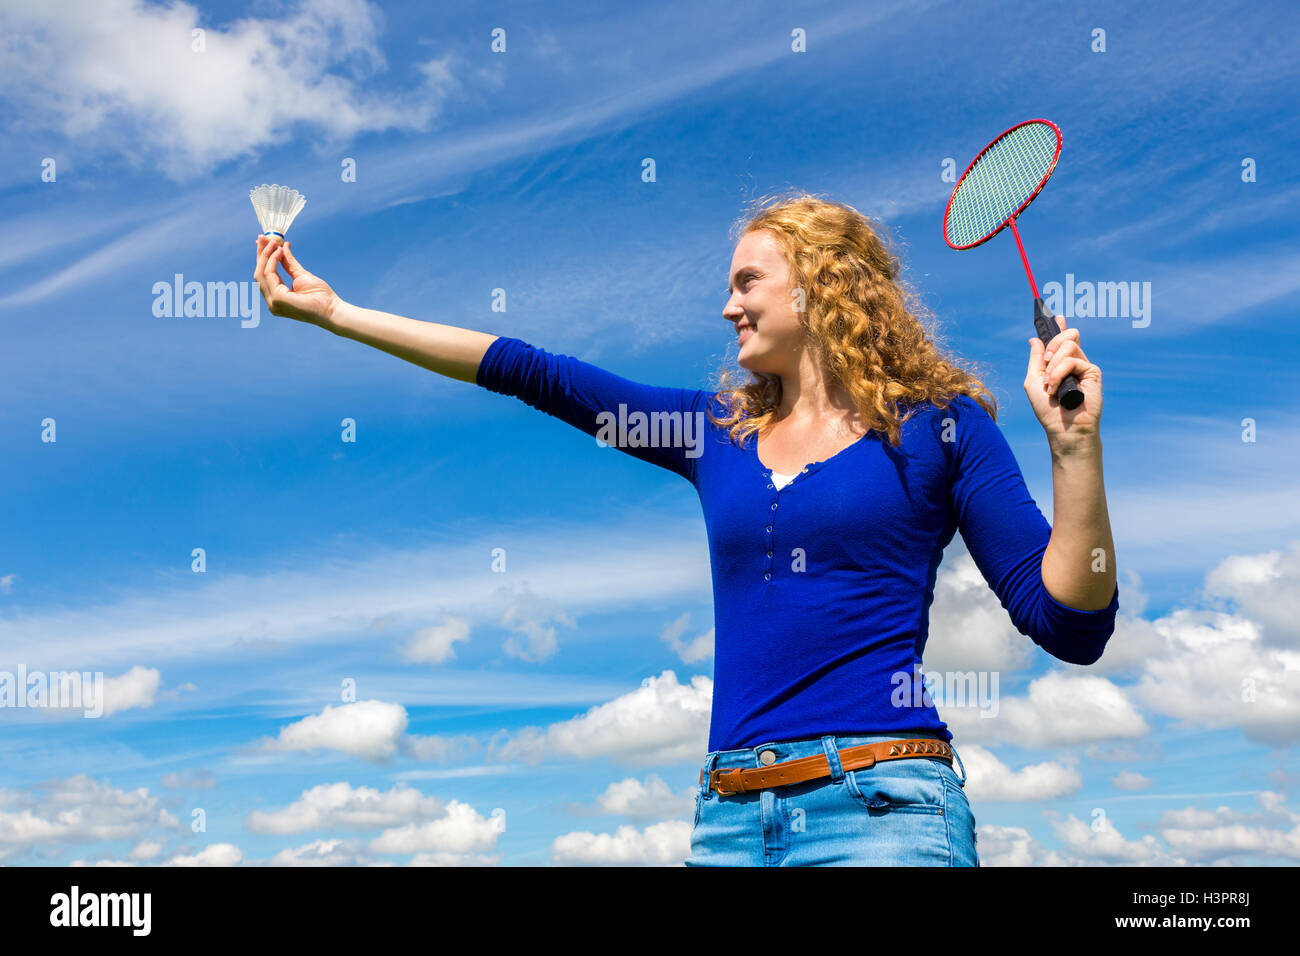 Kaukasische Mädchen hält Shuttle und Badminton Schläger gegen blauen Himmel mit weißen Wolken Stockfoto